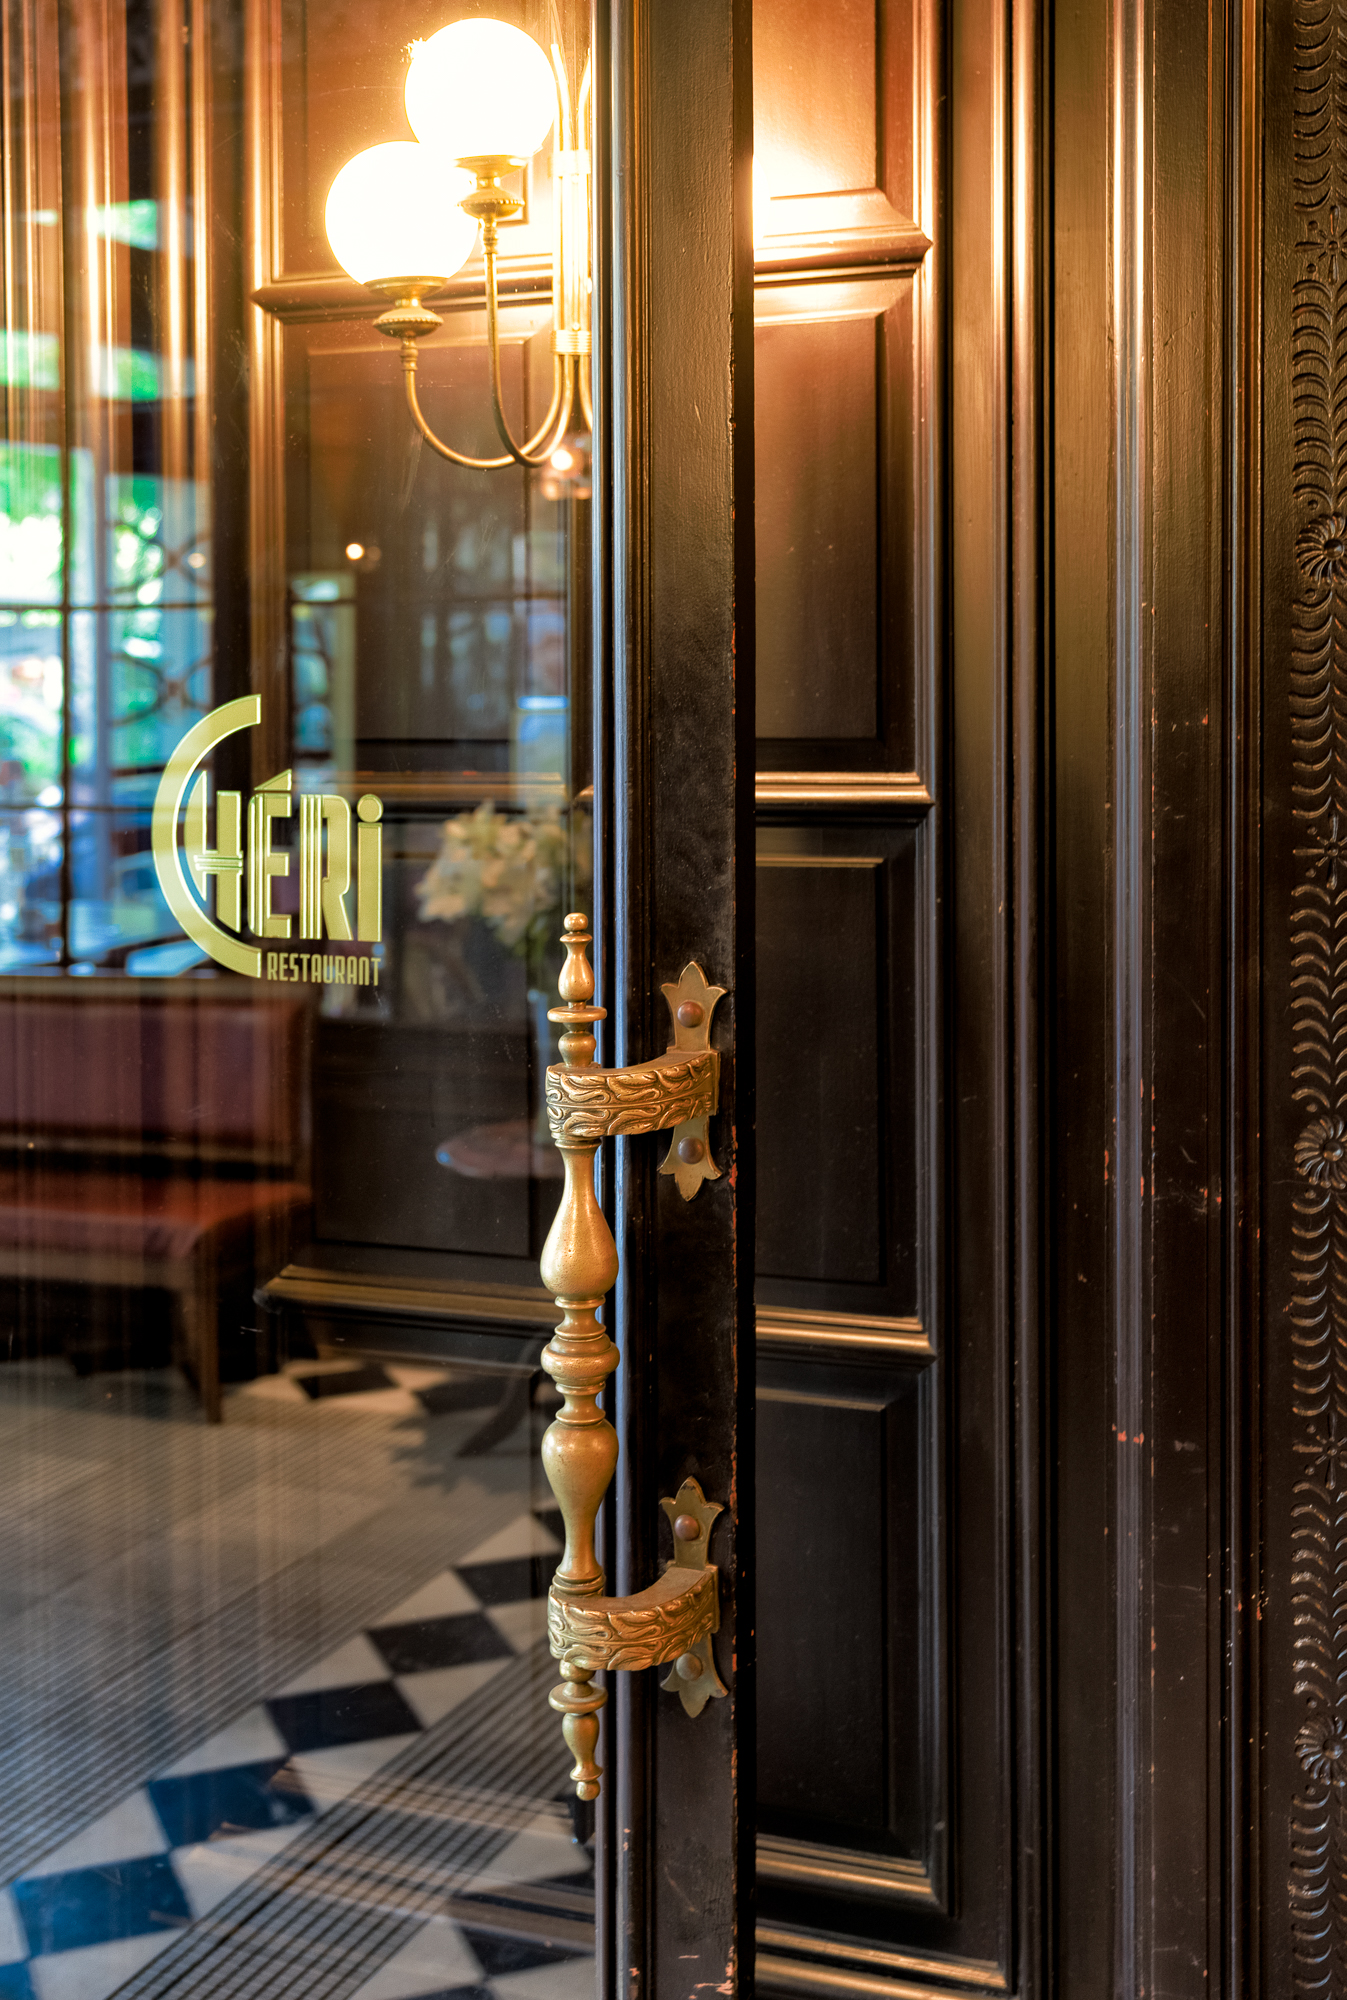 Barcelona Cher Restaurant-5.jpg